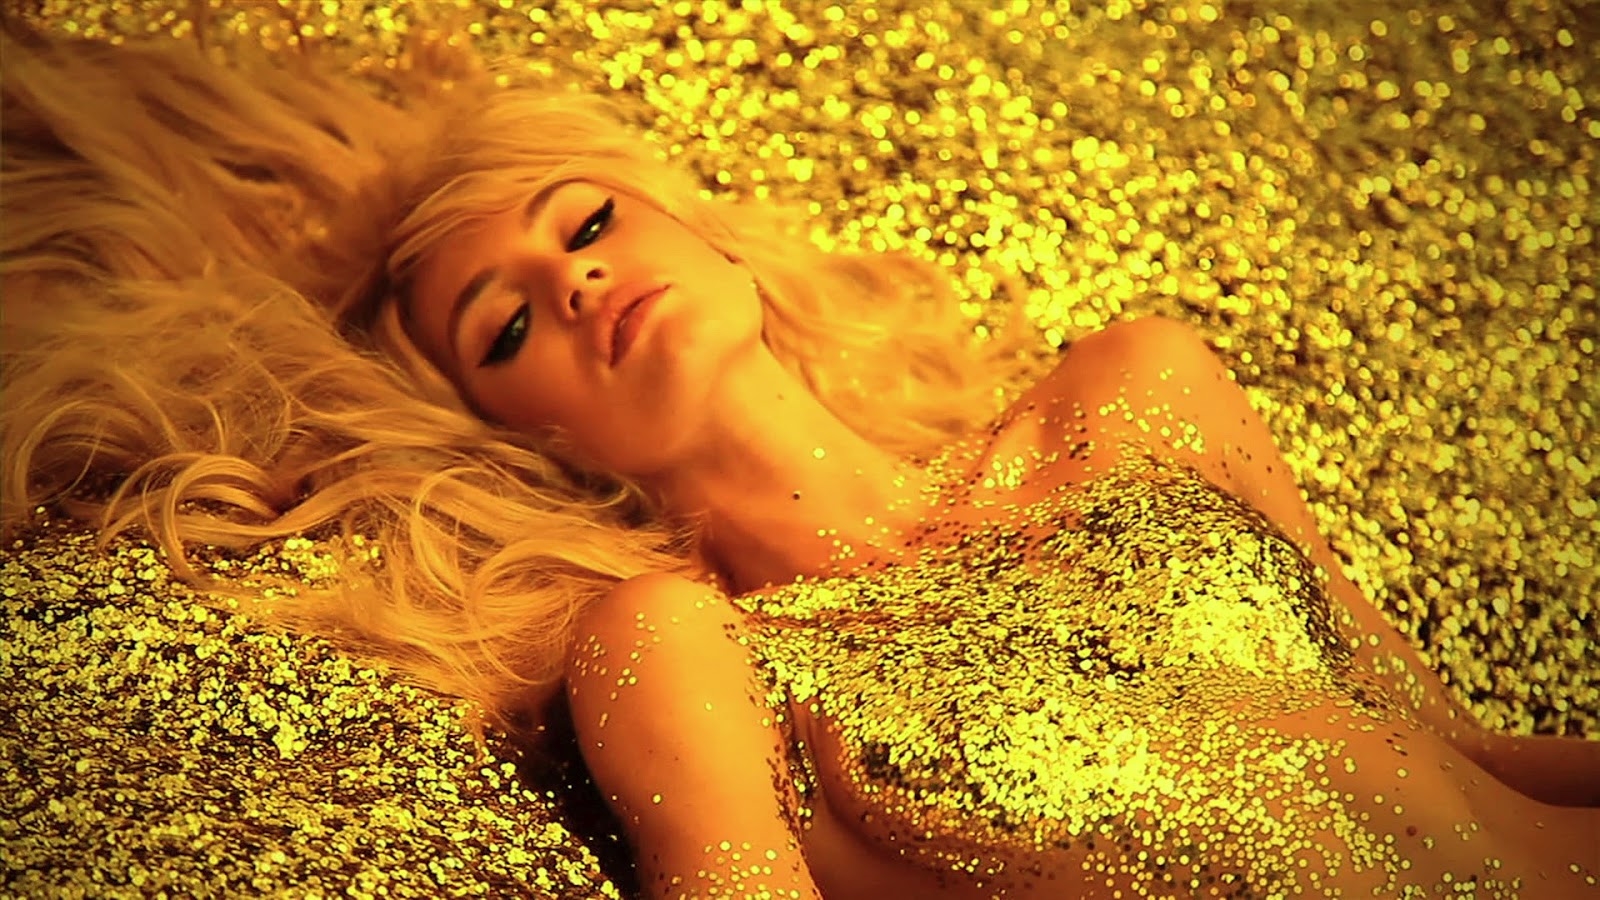 Супер золотой дождь на тело разгоряченной блондинки капал теплыми возбуждающими каплями